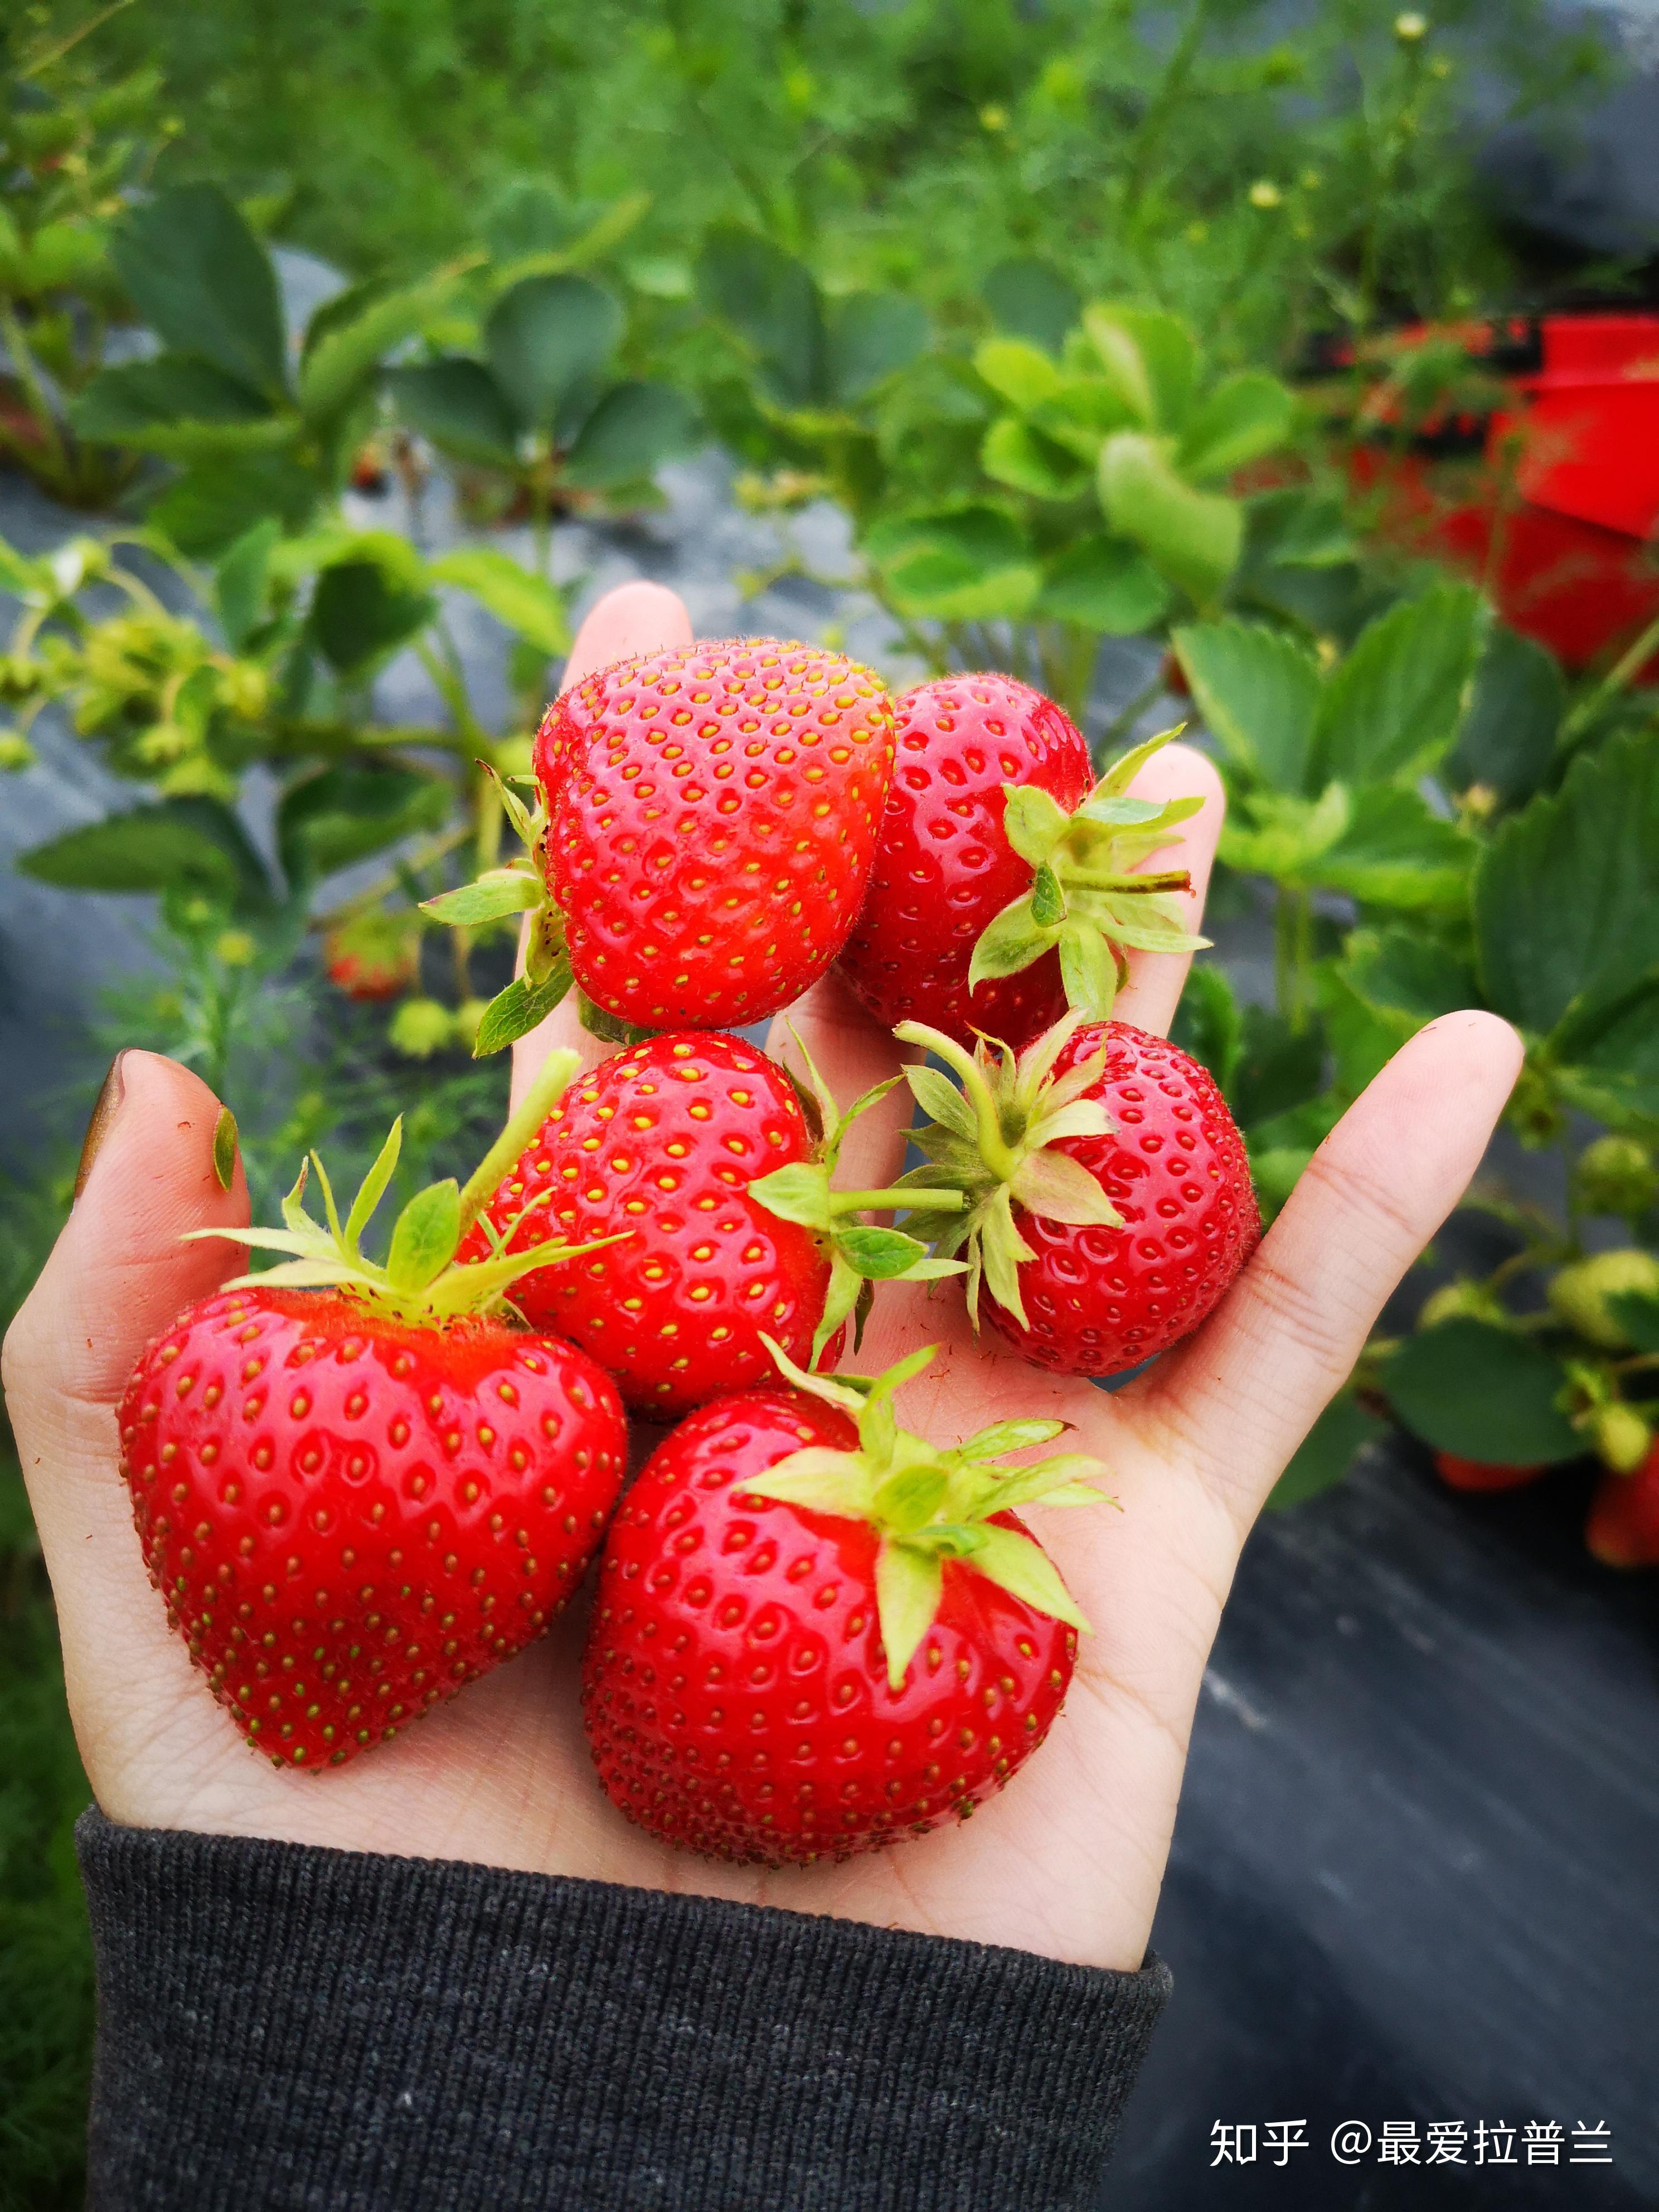 草莓圈分享草莓幼苗什么时候施肥？草莓苗施肥用什么肥料好？ - 知乎